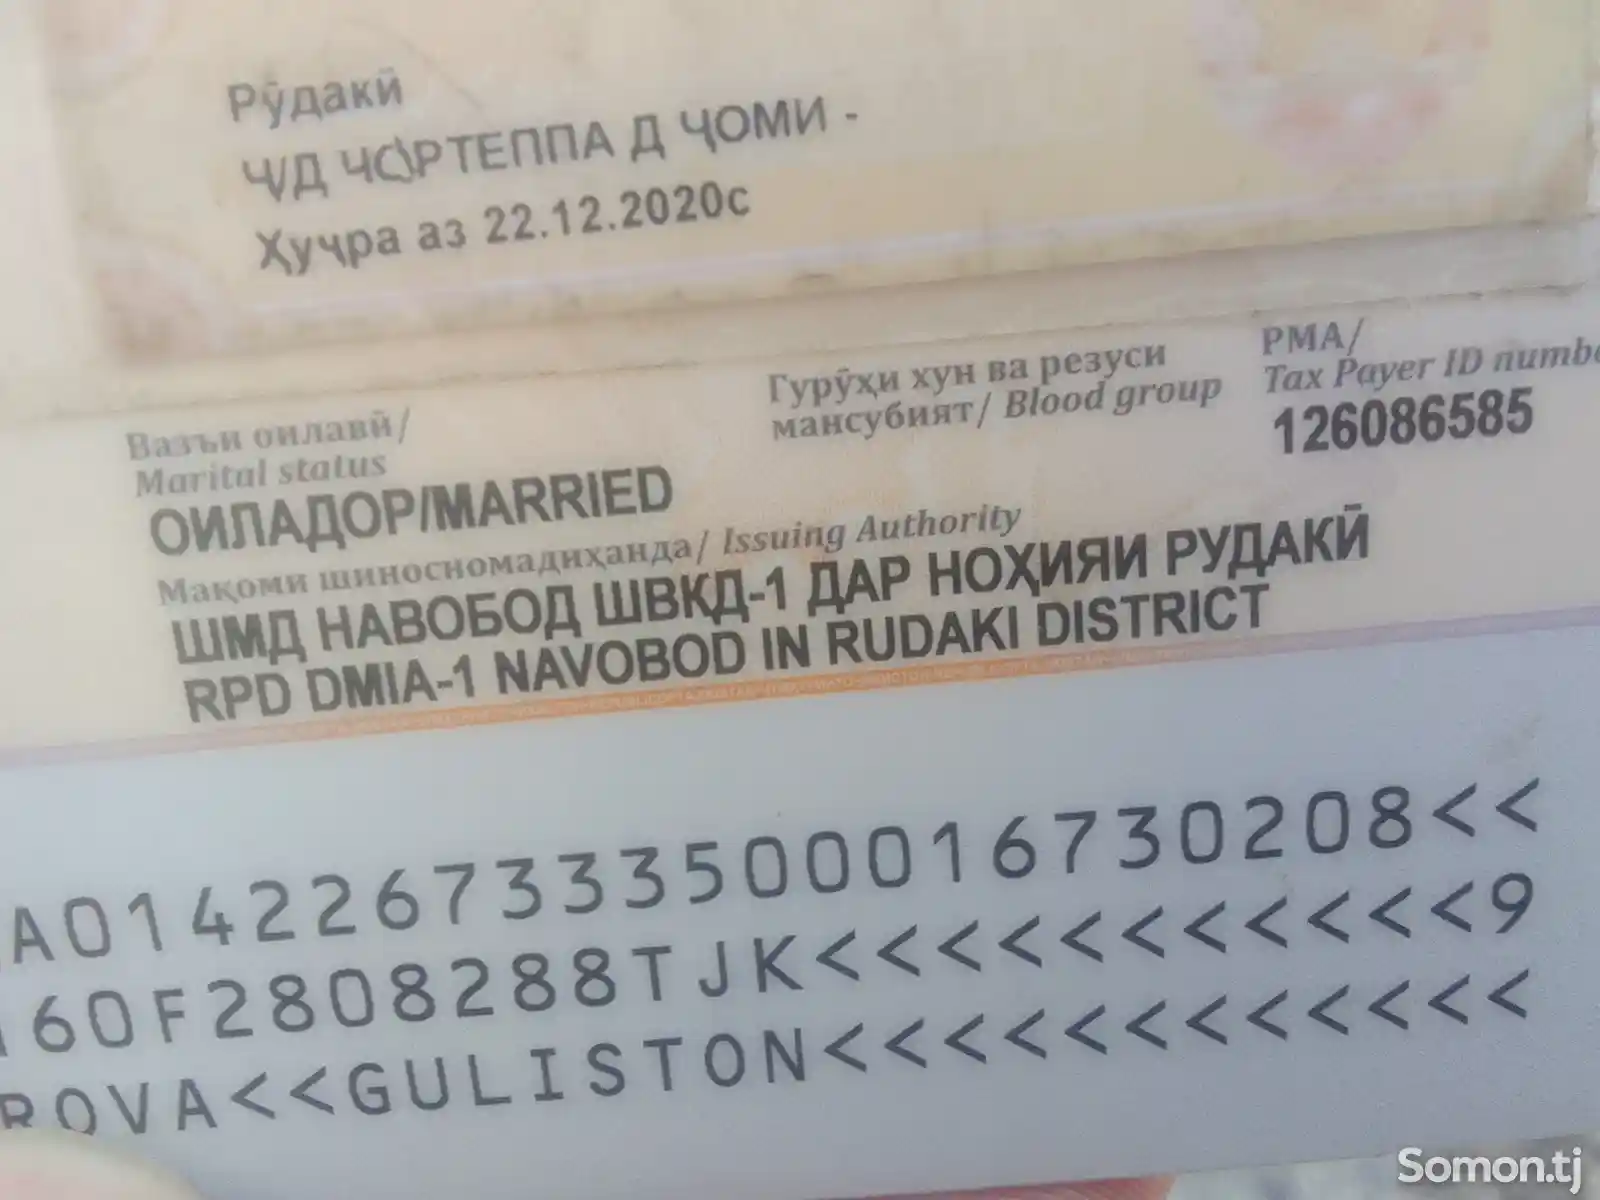 Найден паспорт на имя Сафарова Гулистон-1